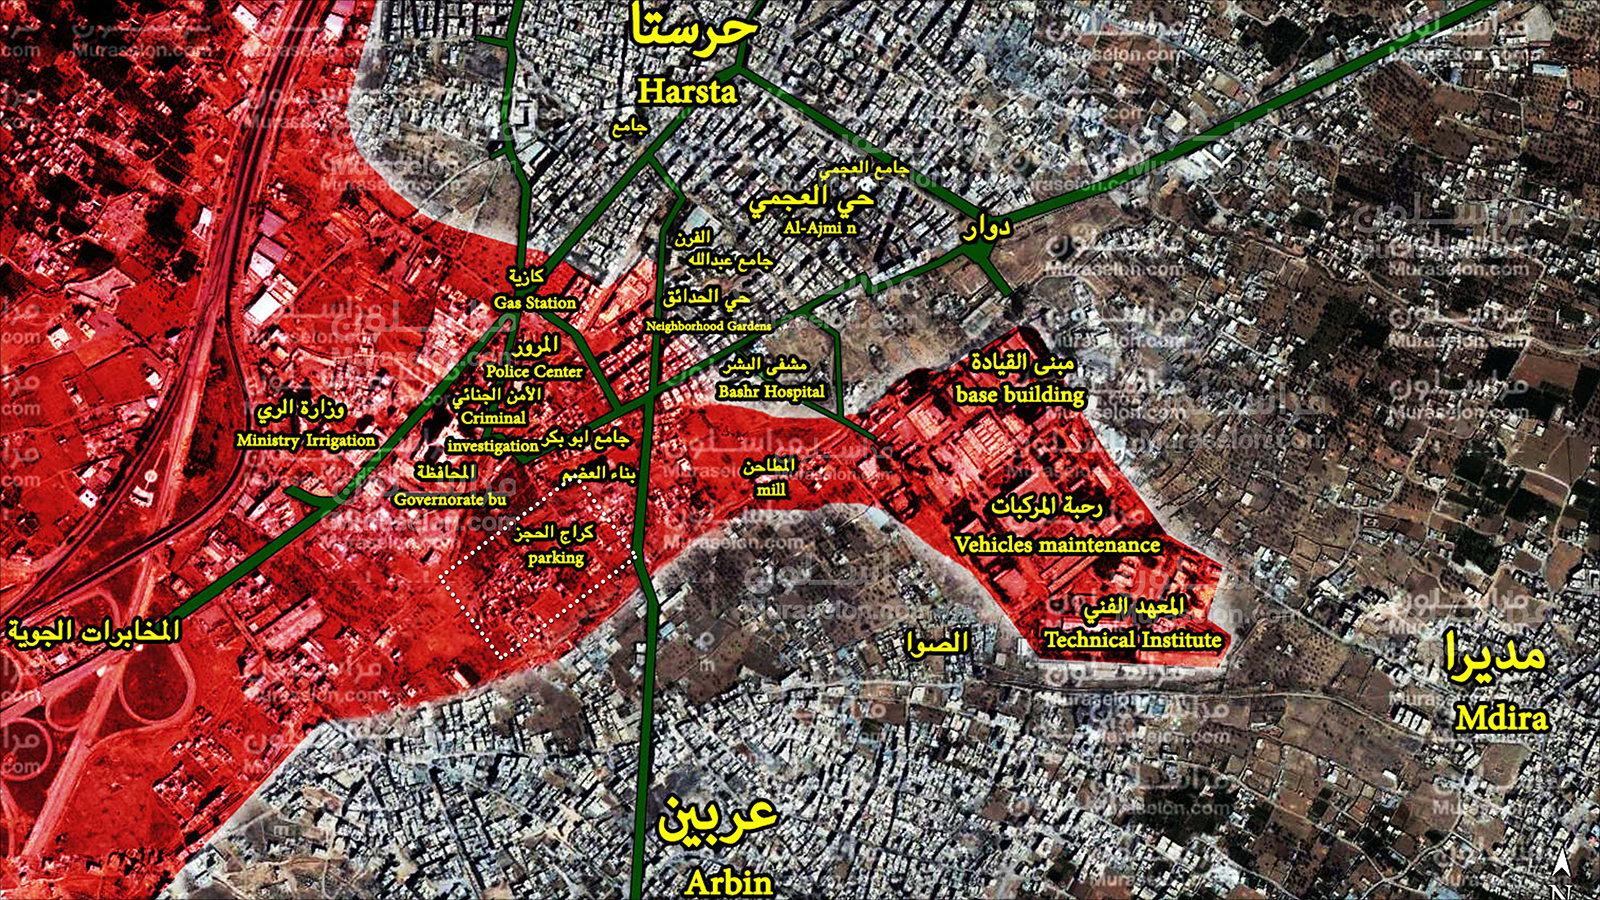 خريطة حديثة للوضع الميداني في حرستا ومحيطها نشرتها مواقع موالية للنظام (اللون الأحمر يرمز لمناطق سيطرة النظام)